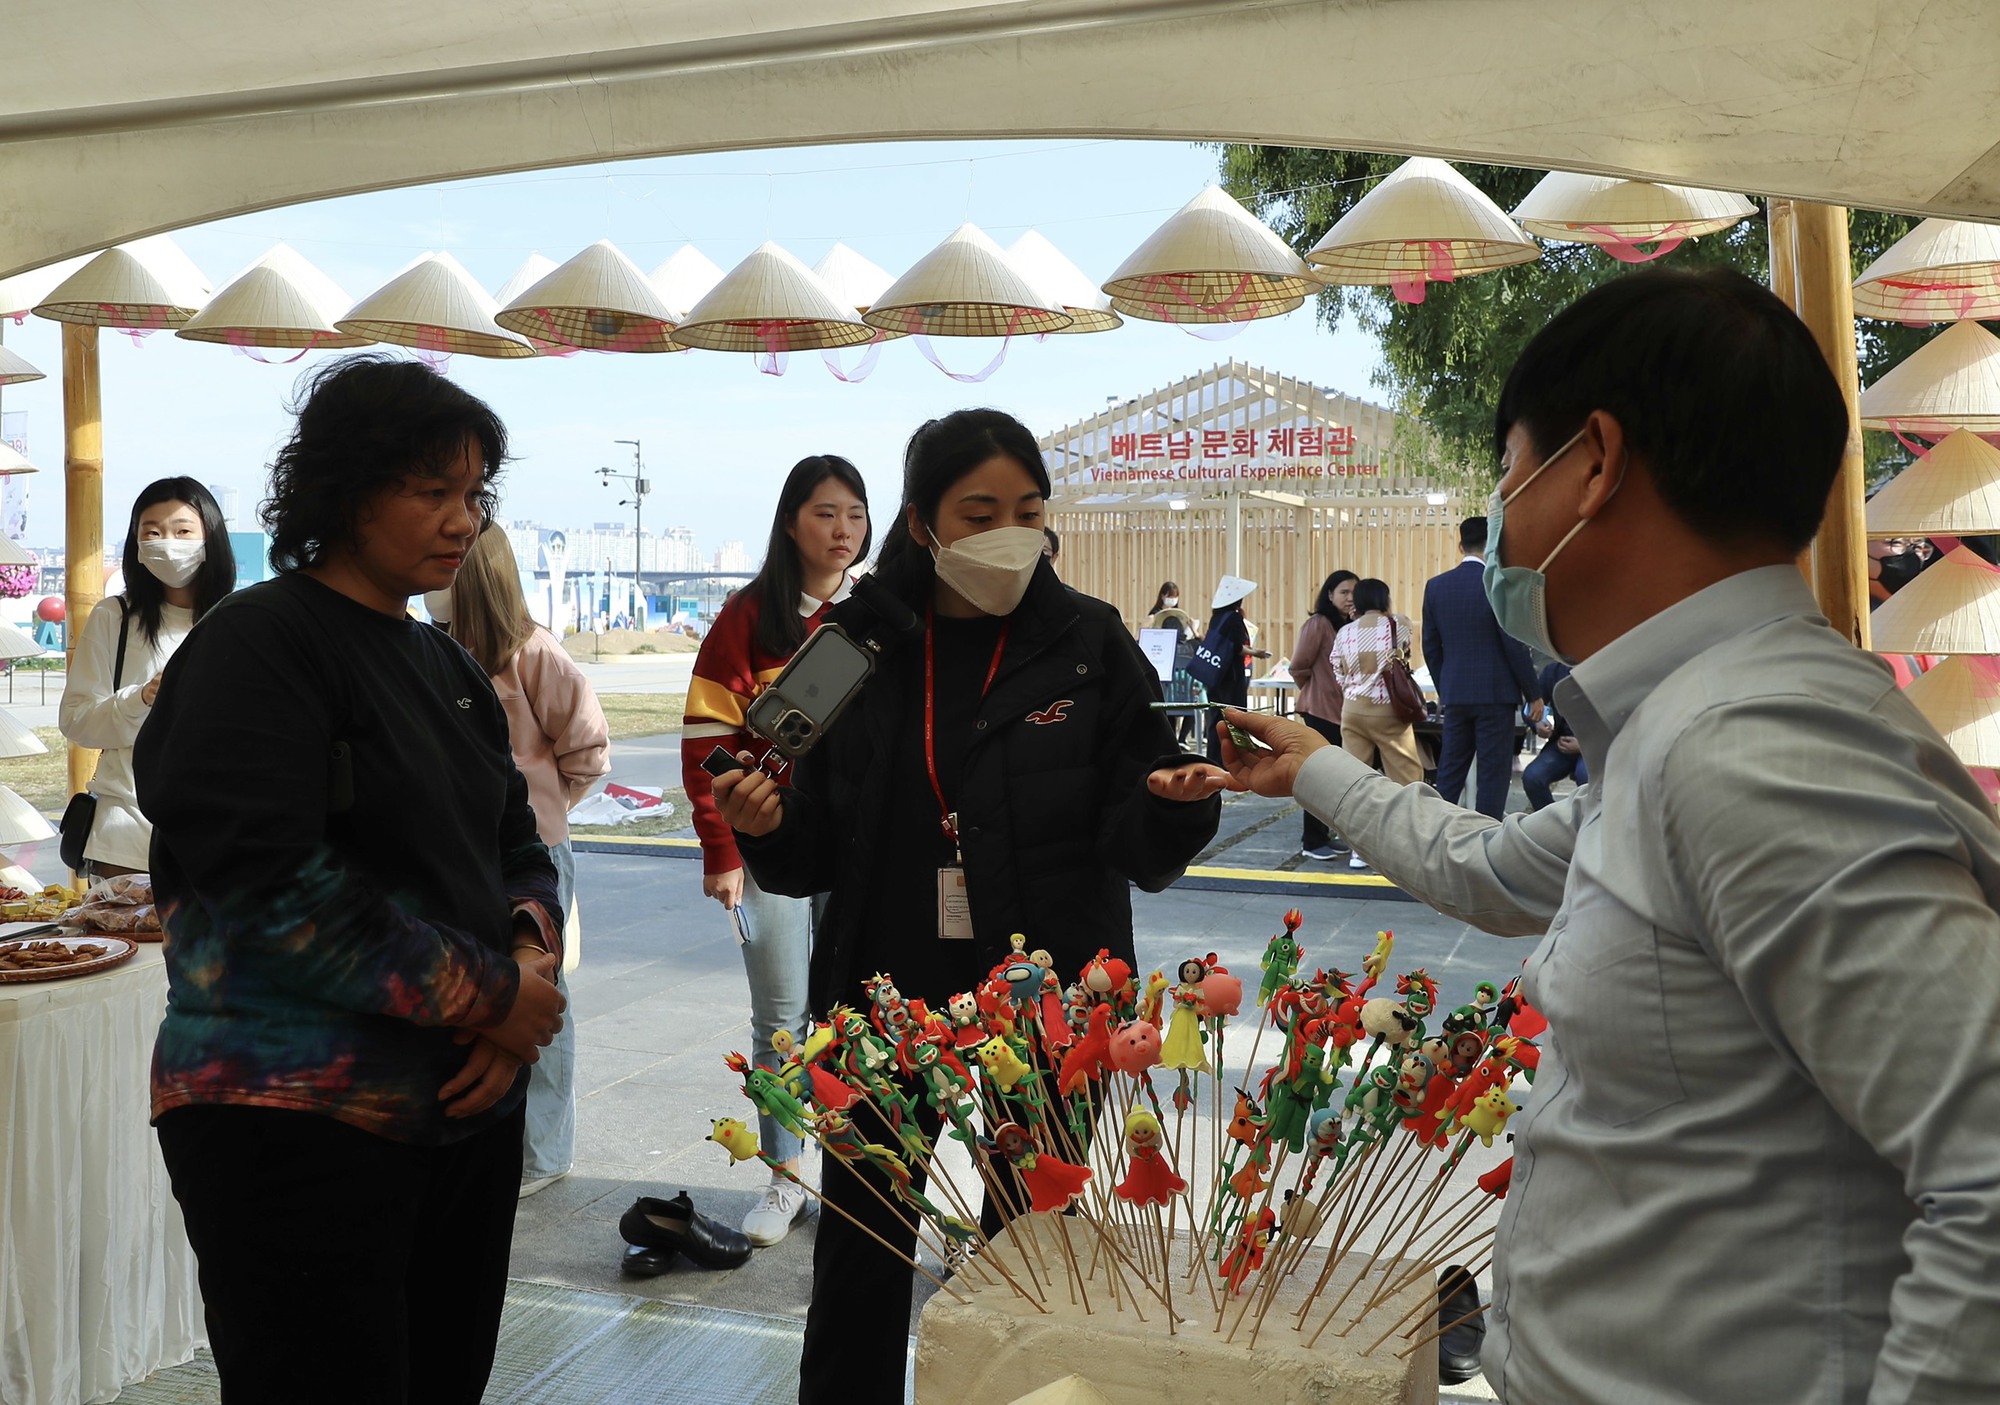 Người dân Hàn Quốc thích thú với không gian đặc sắc văn hóa Việt Nam tại Lễ hội Kết nối Văn hóa - Ảnh 6.